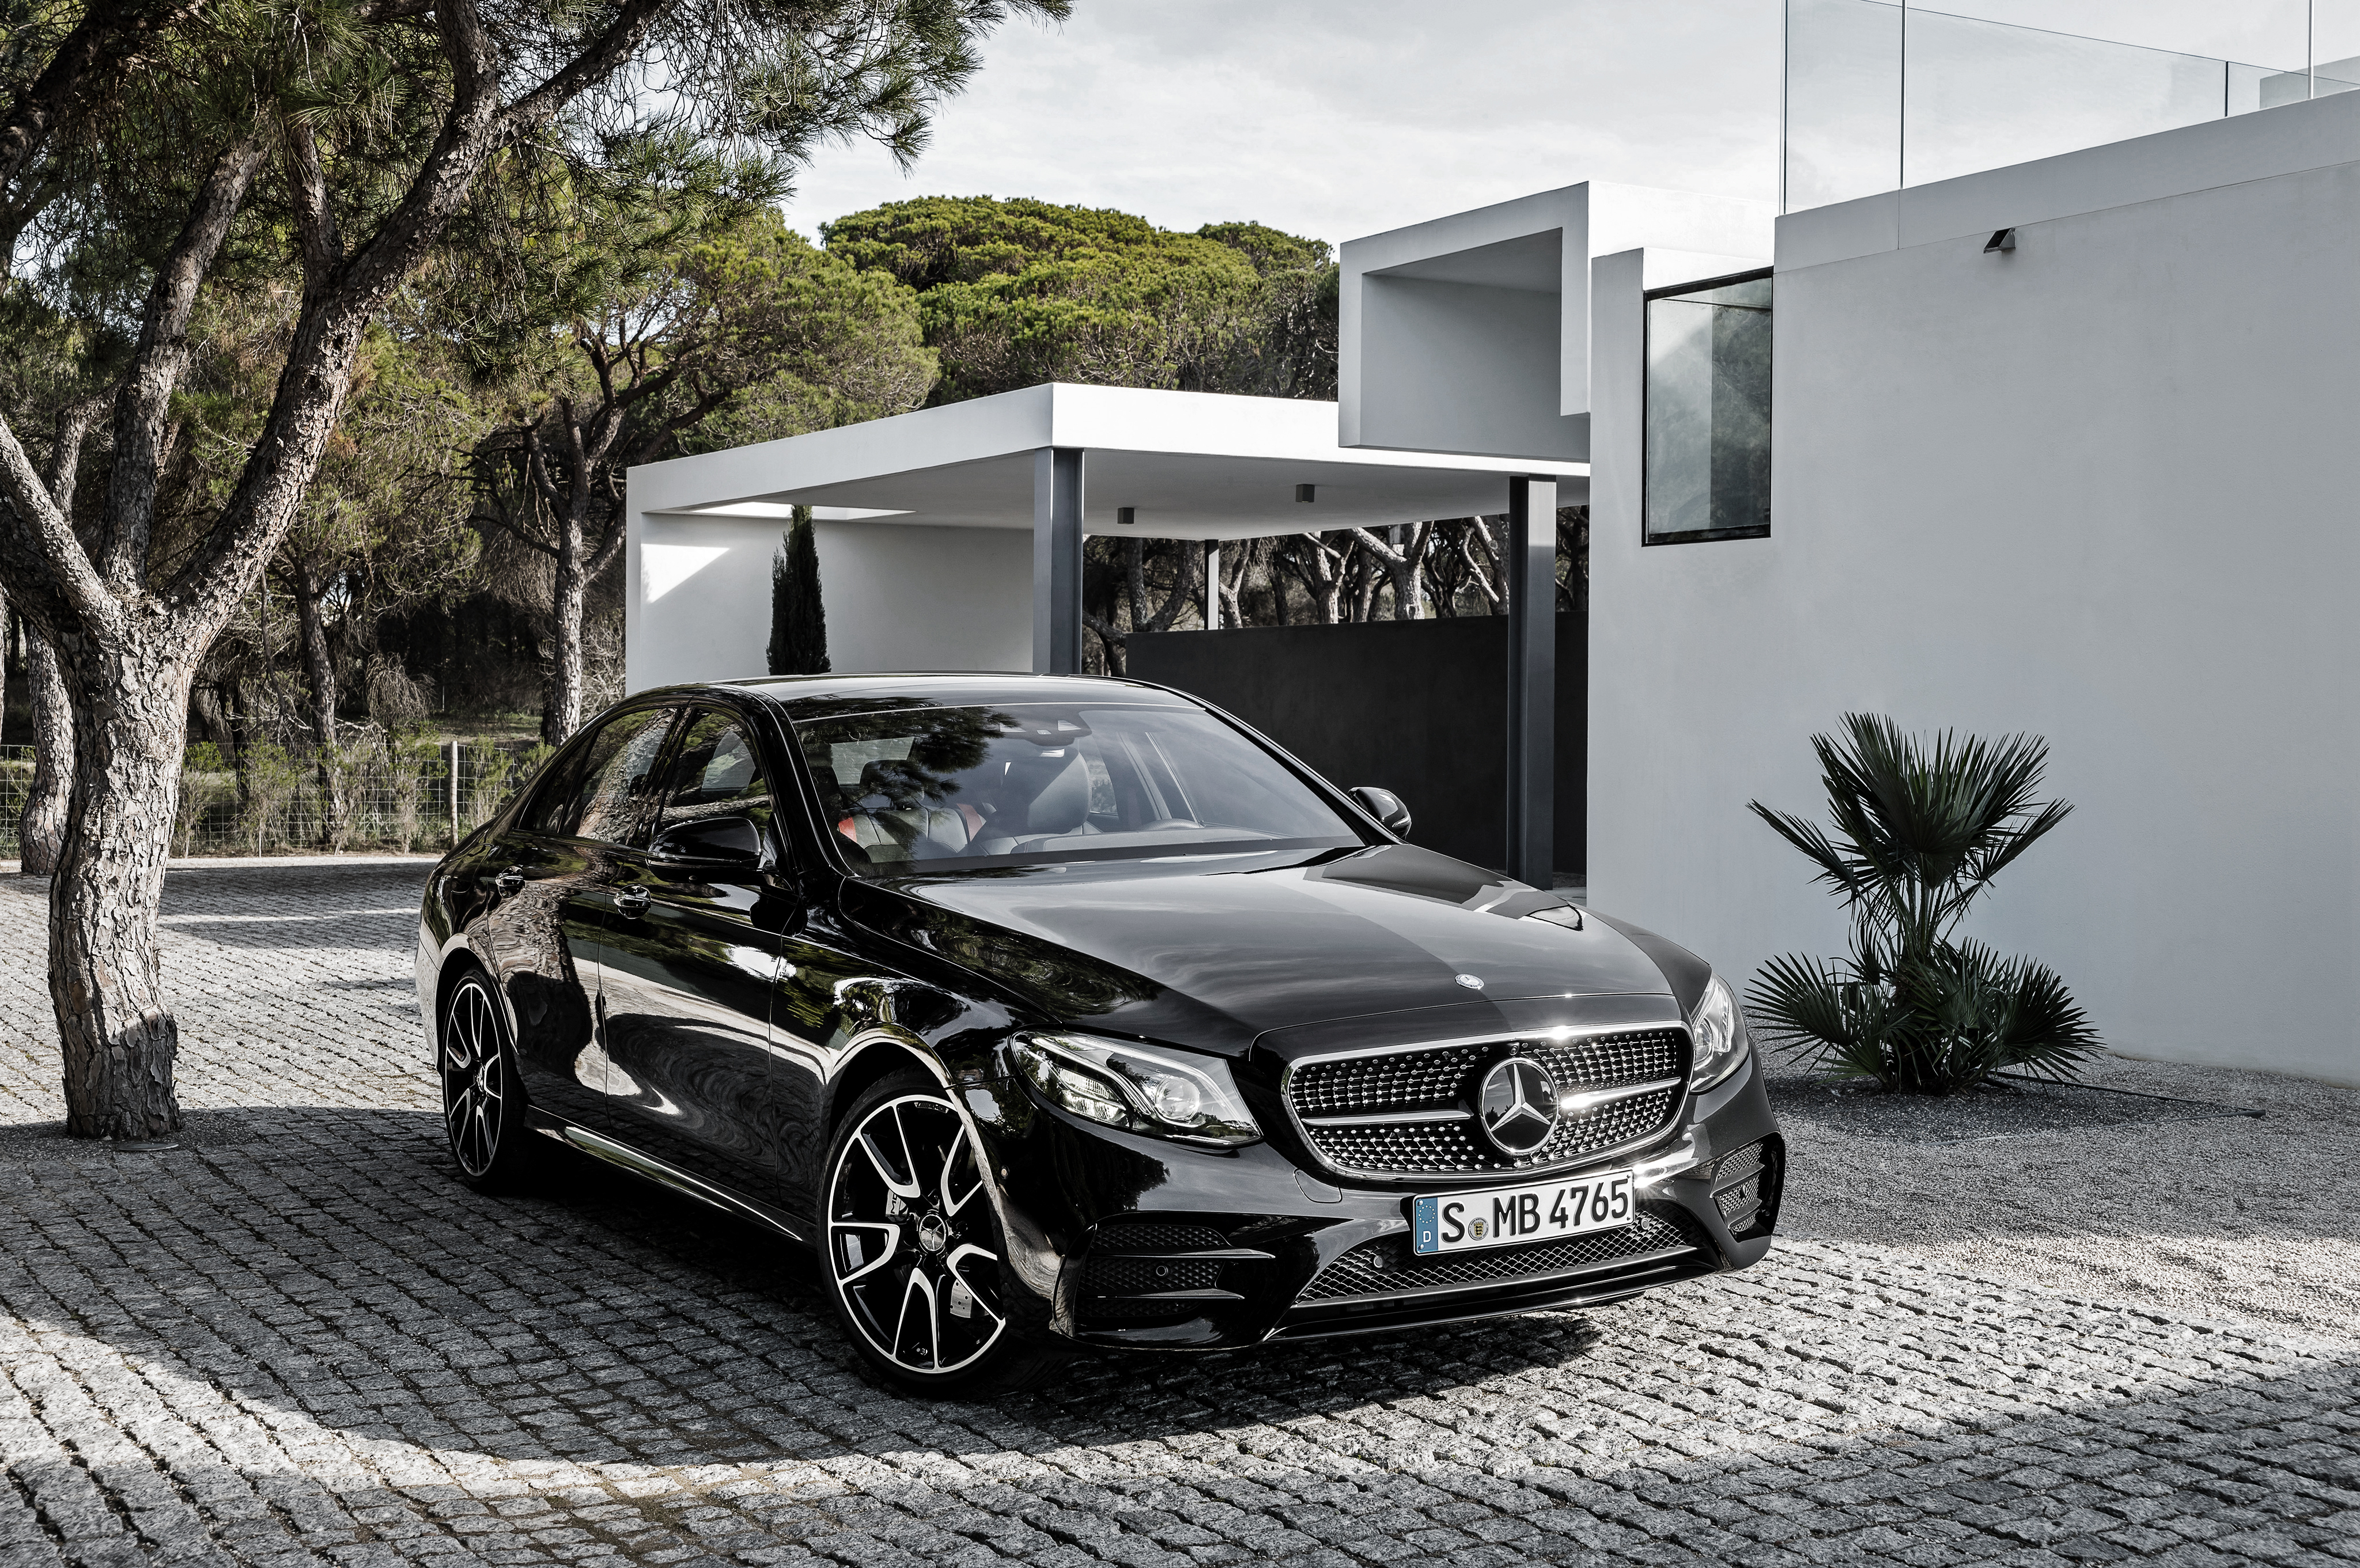 Télécharger des fonds d'écran Mercedes Benz Classe E HD